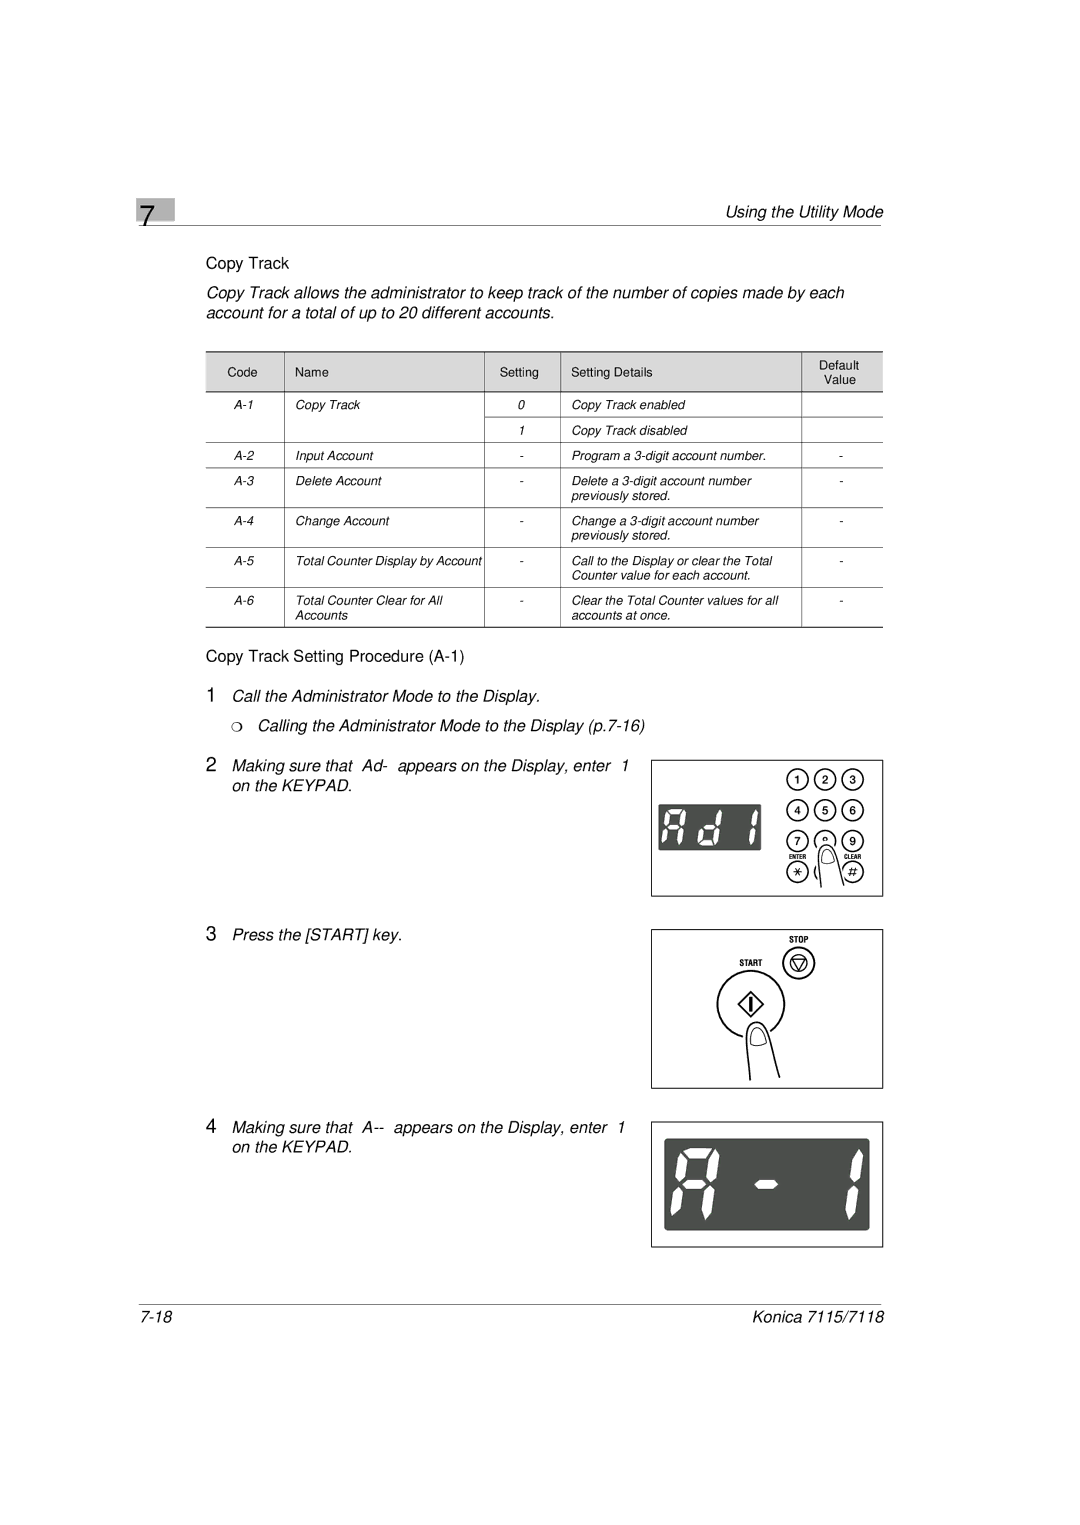 Konica Minolta Printer Copier manual Copy Track Setting Procedure A-1 